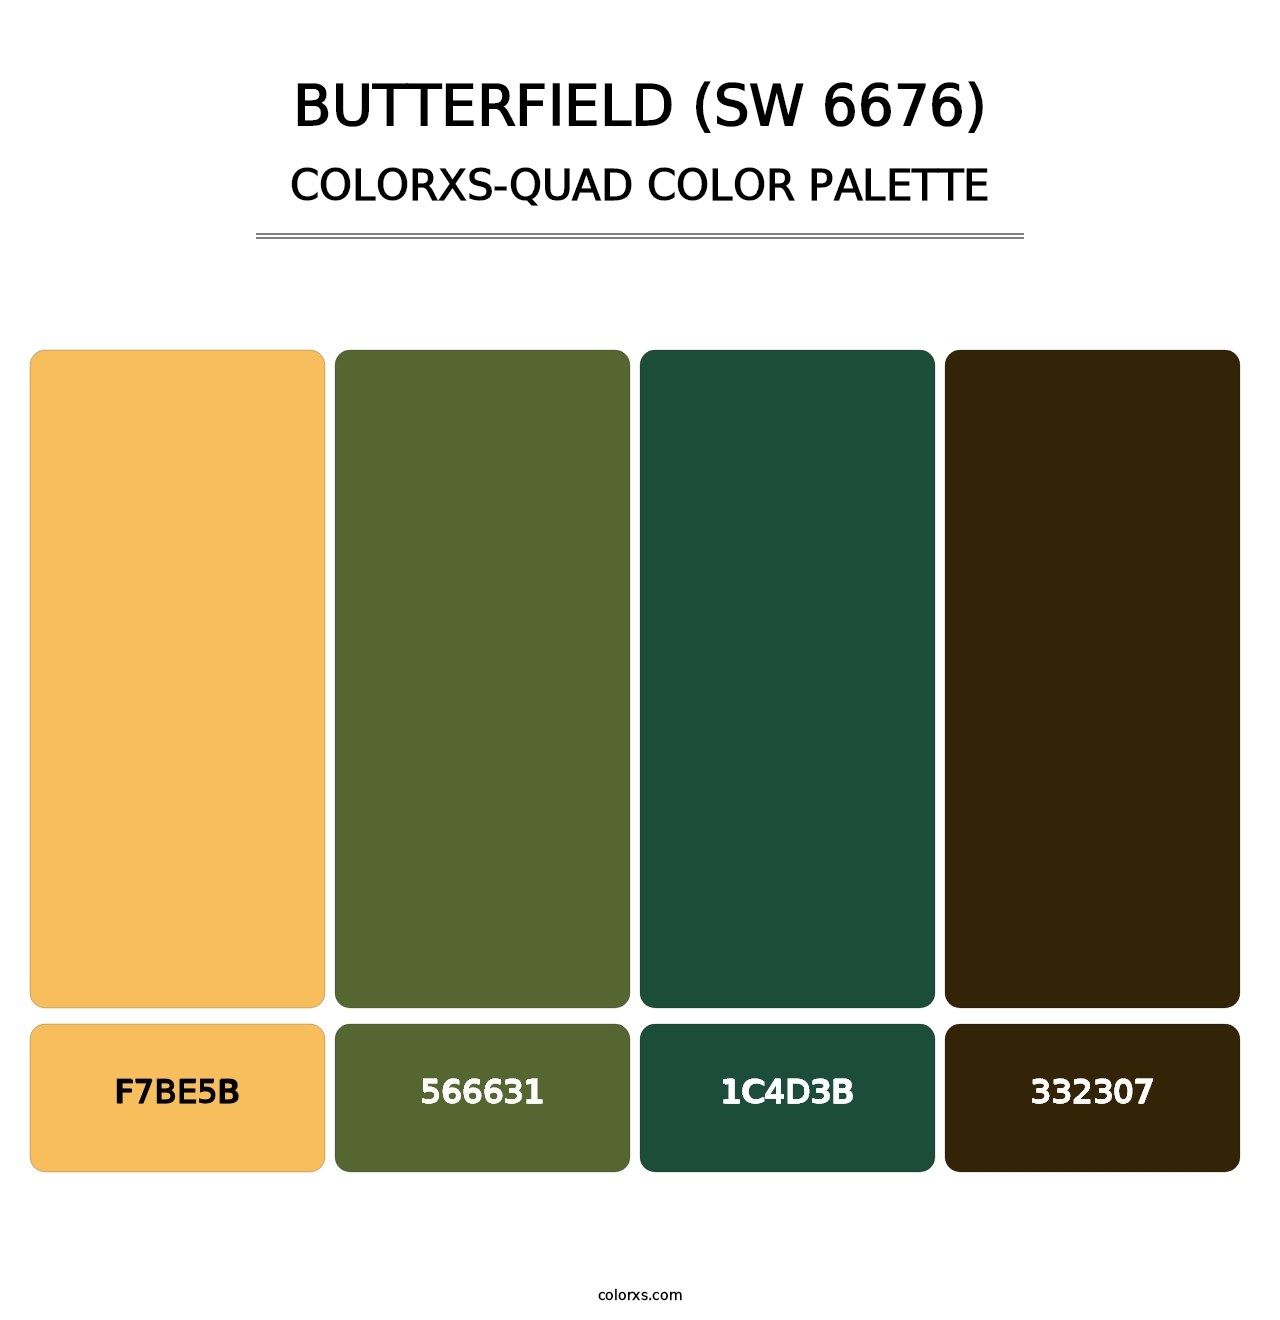 Butterfield (SW 6676) - Colorxs Quad Palette